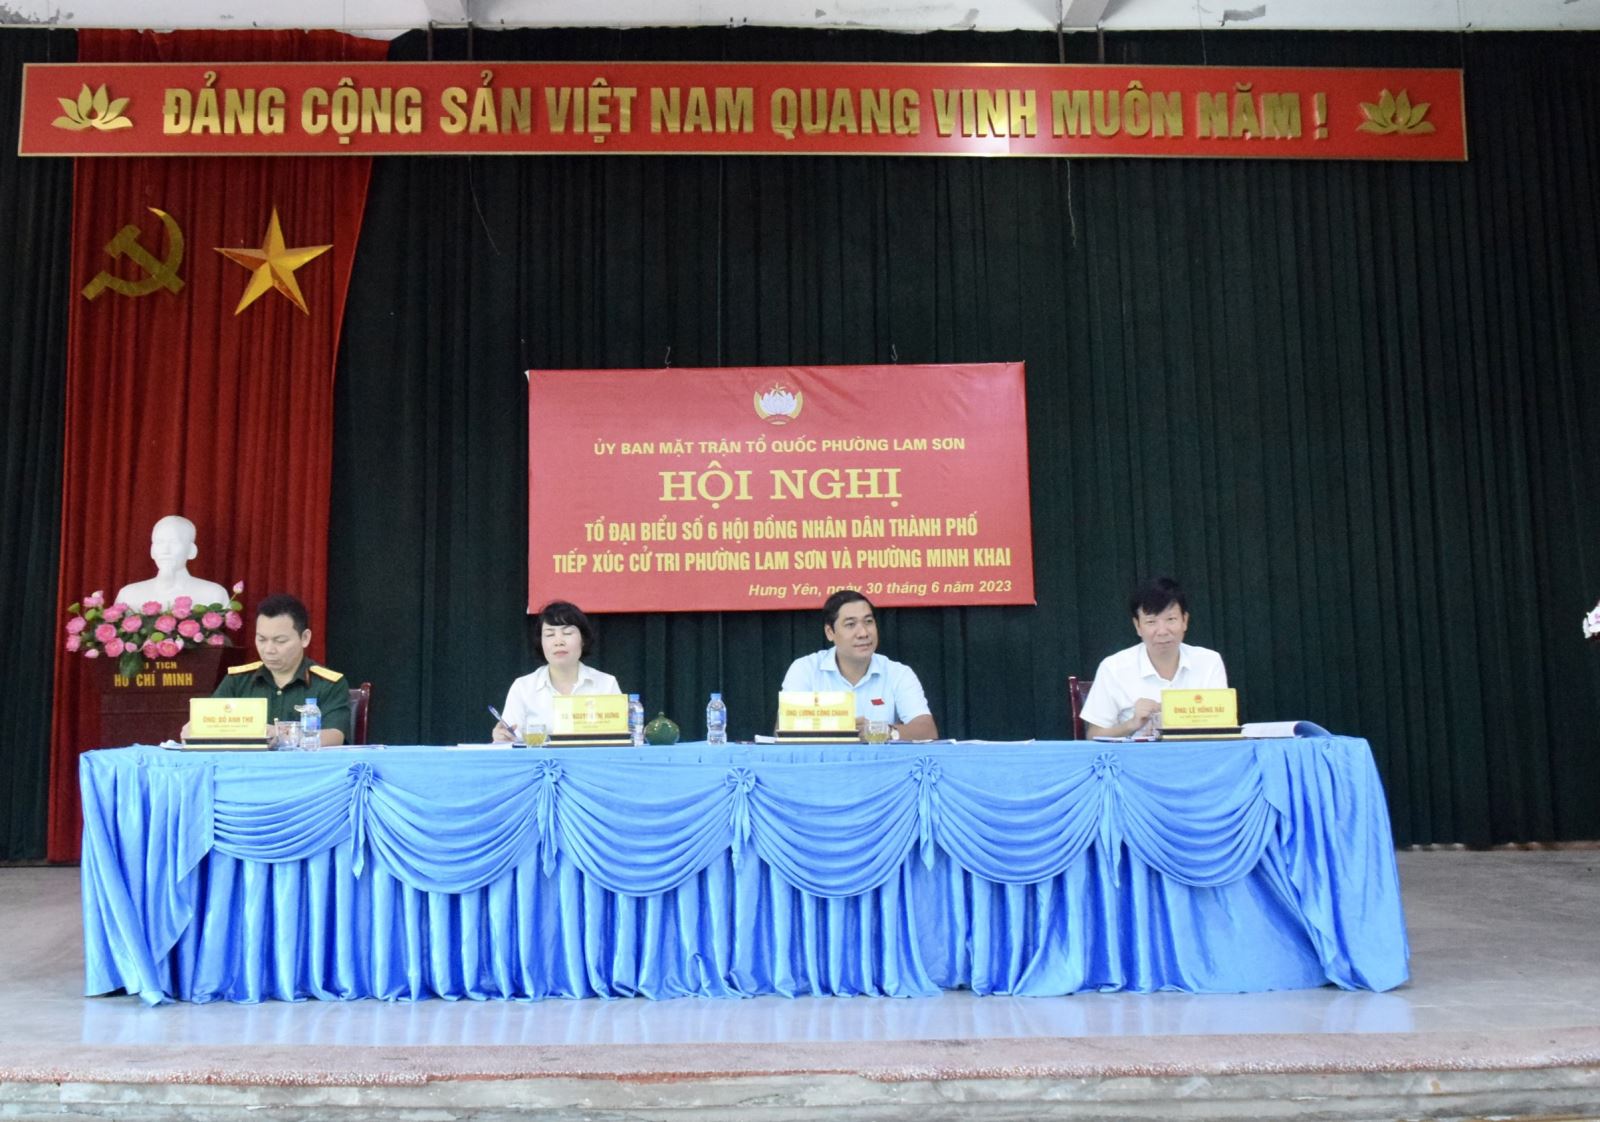 Tổ đại biểu số 6 Hội đồng nhân dân thành phố Hưng tiếp xúc với củ  tri phường Lam Sơn và phường Minh Khai